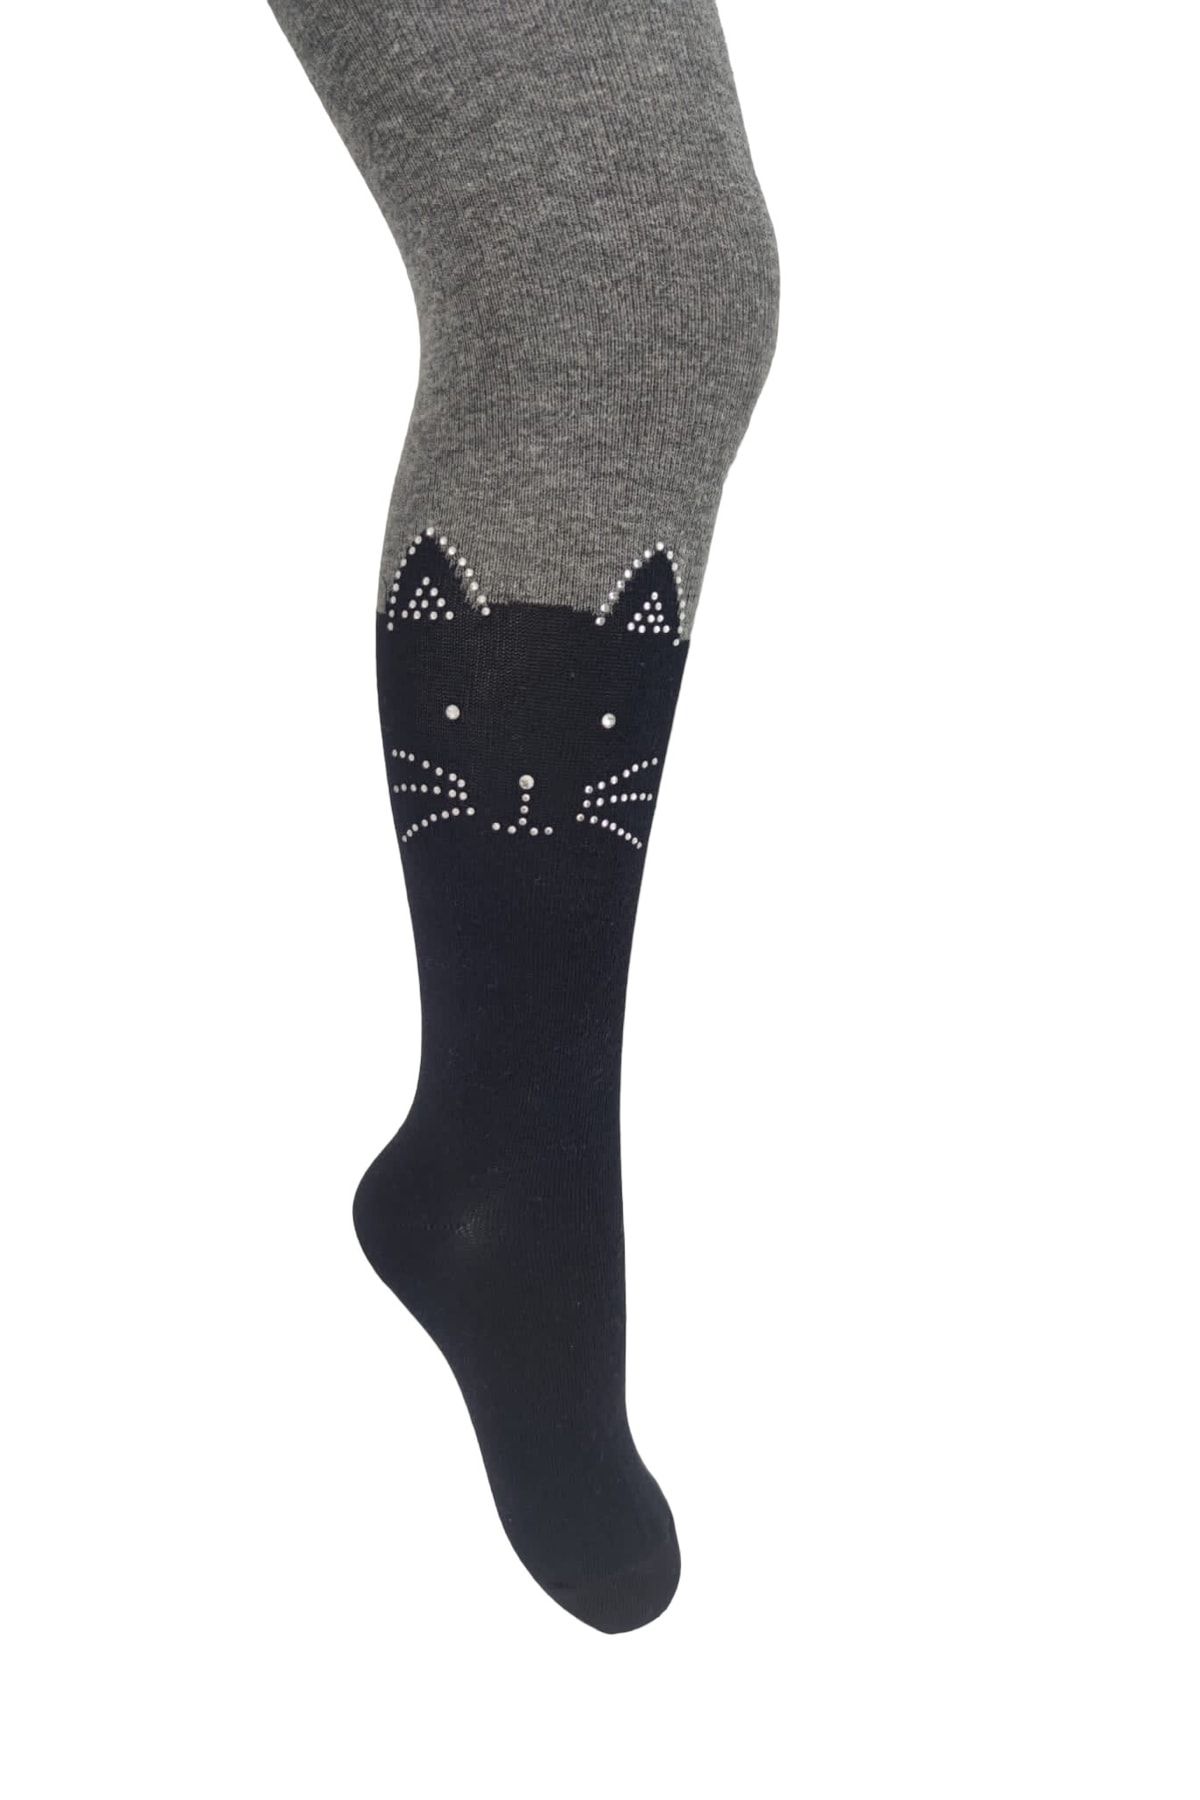 Belyy Socks Taş Baskılı Kedi Desen Kız Çocuk Külotlu Çorap